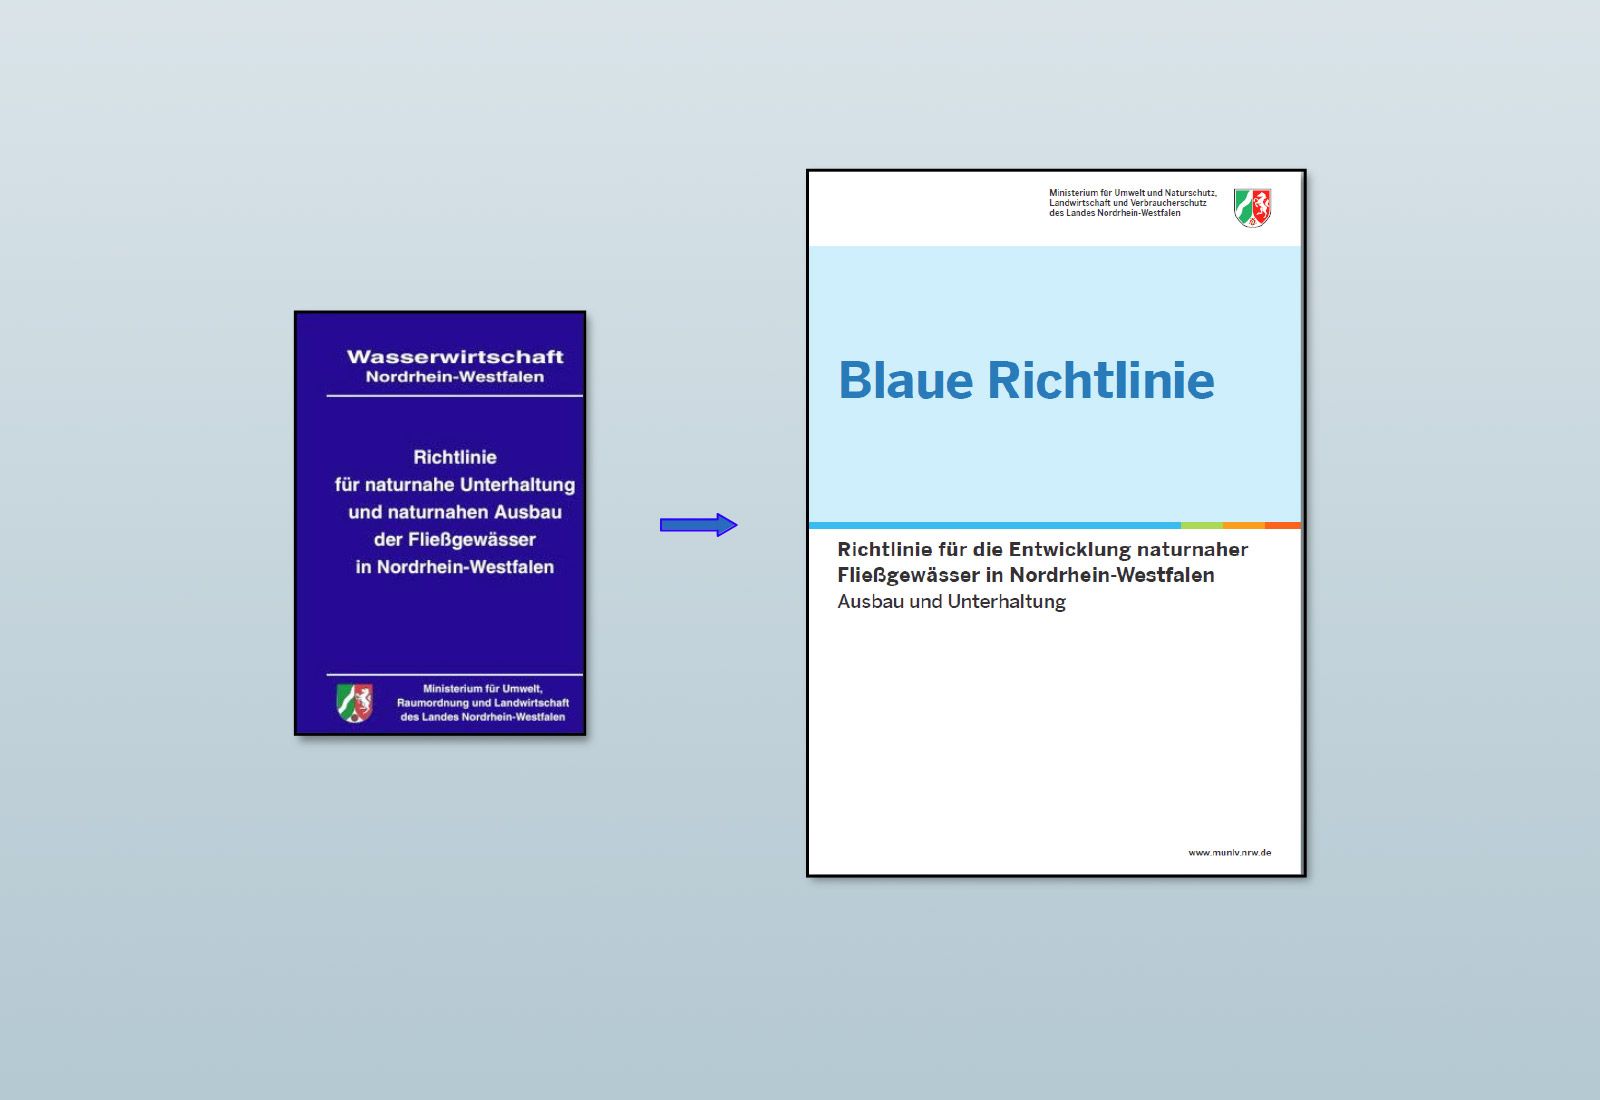 Richtlinie für naturnahe Unterhaltung und naturnahen Ausbau der Fließgewässer in Nordrhein-Westfalen ("Blaue Richtlinie")